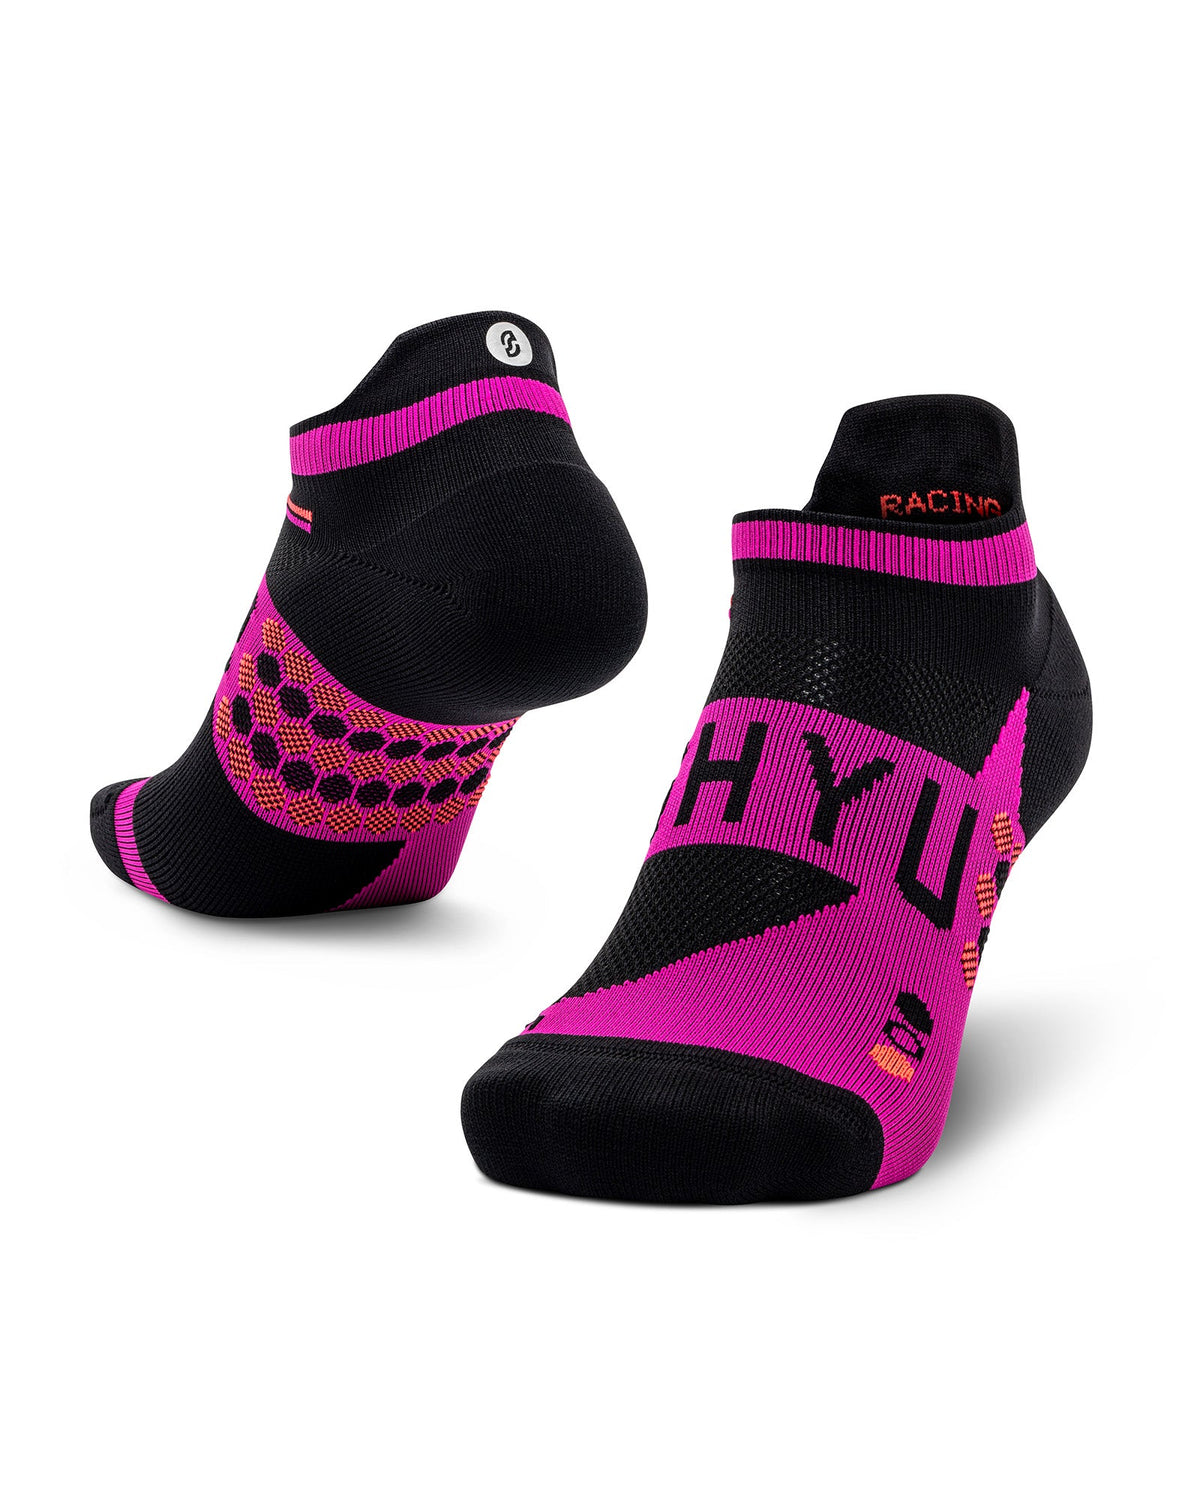 SHYU racing socks - black | violet | crimson (tabs only)